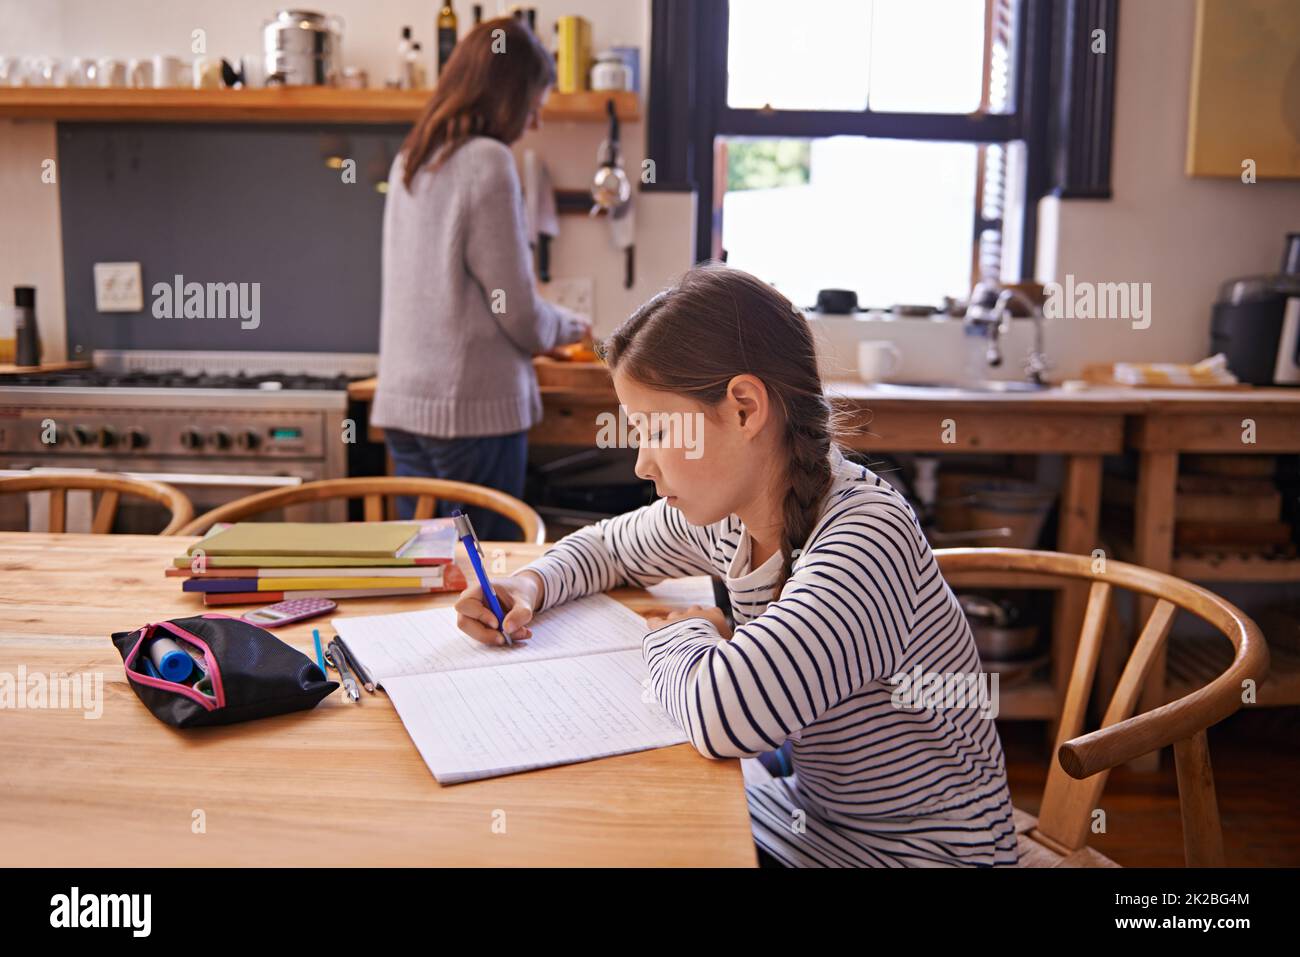 Haut de sa classe... Une jeune fille occupée faisant ses devoirs à la table de cuisine Banque D'Images